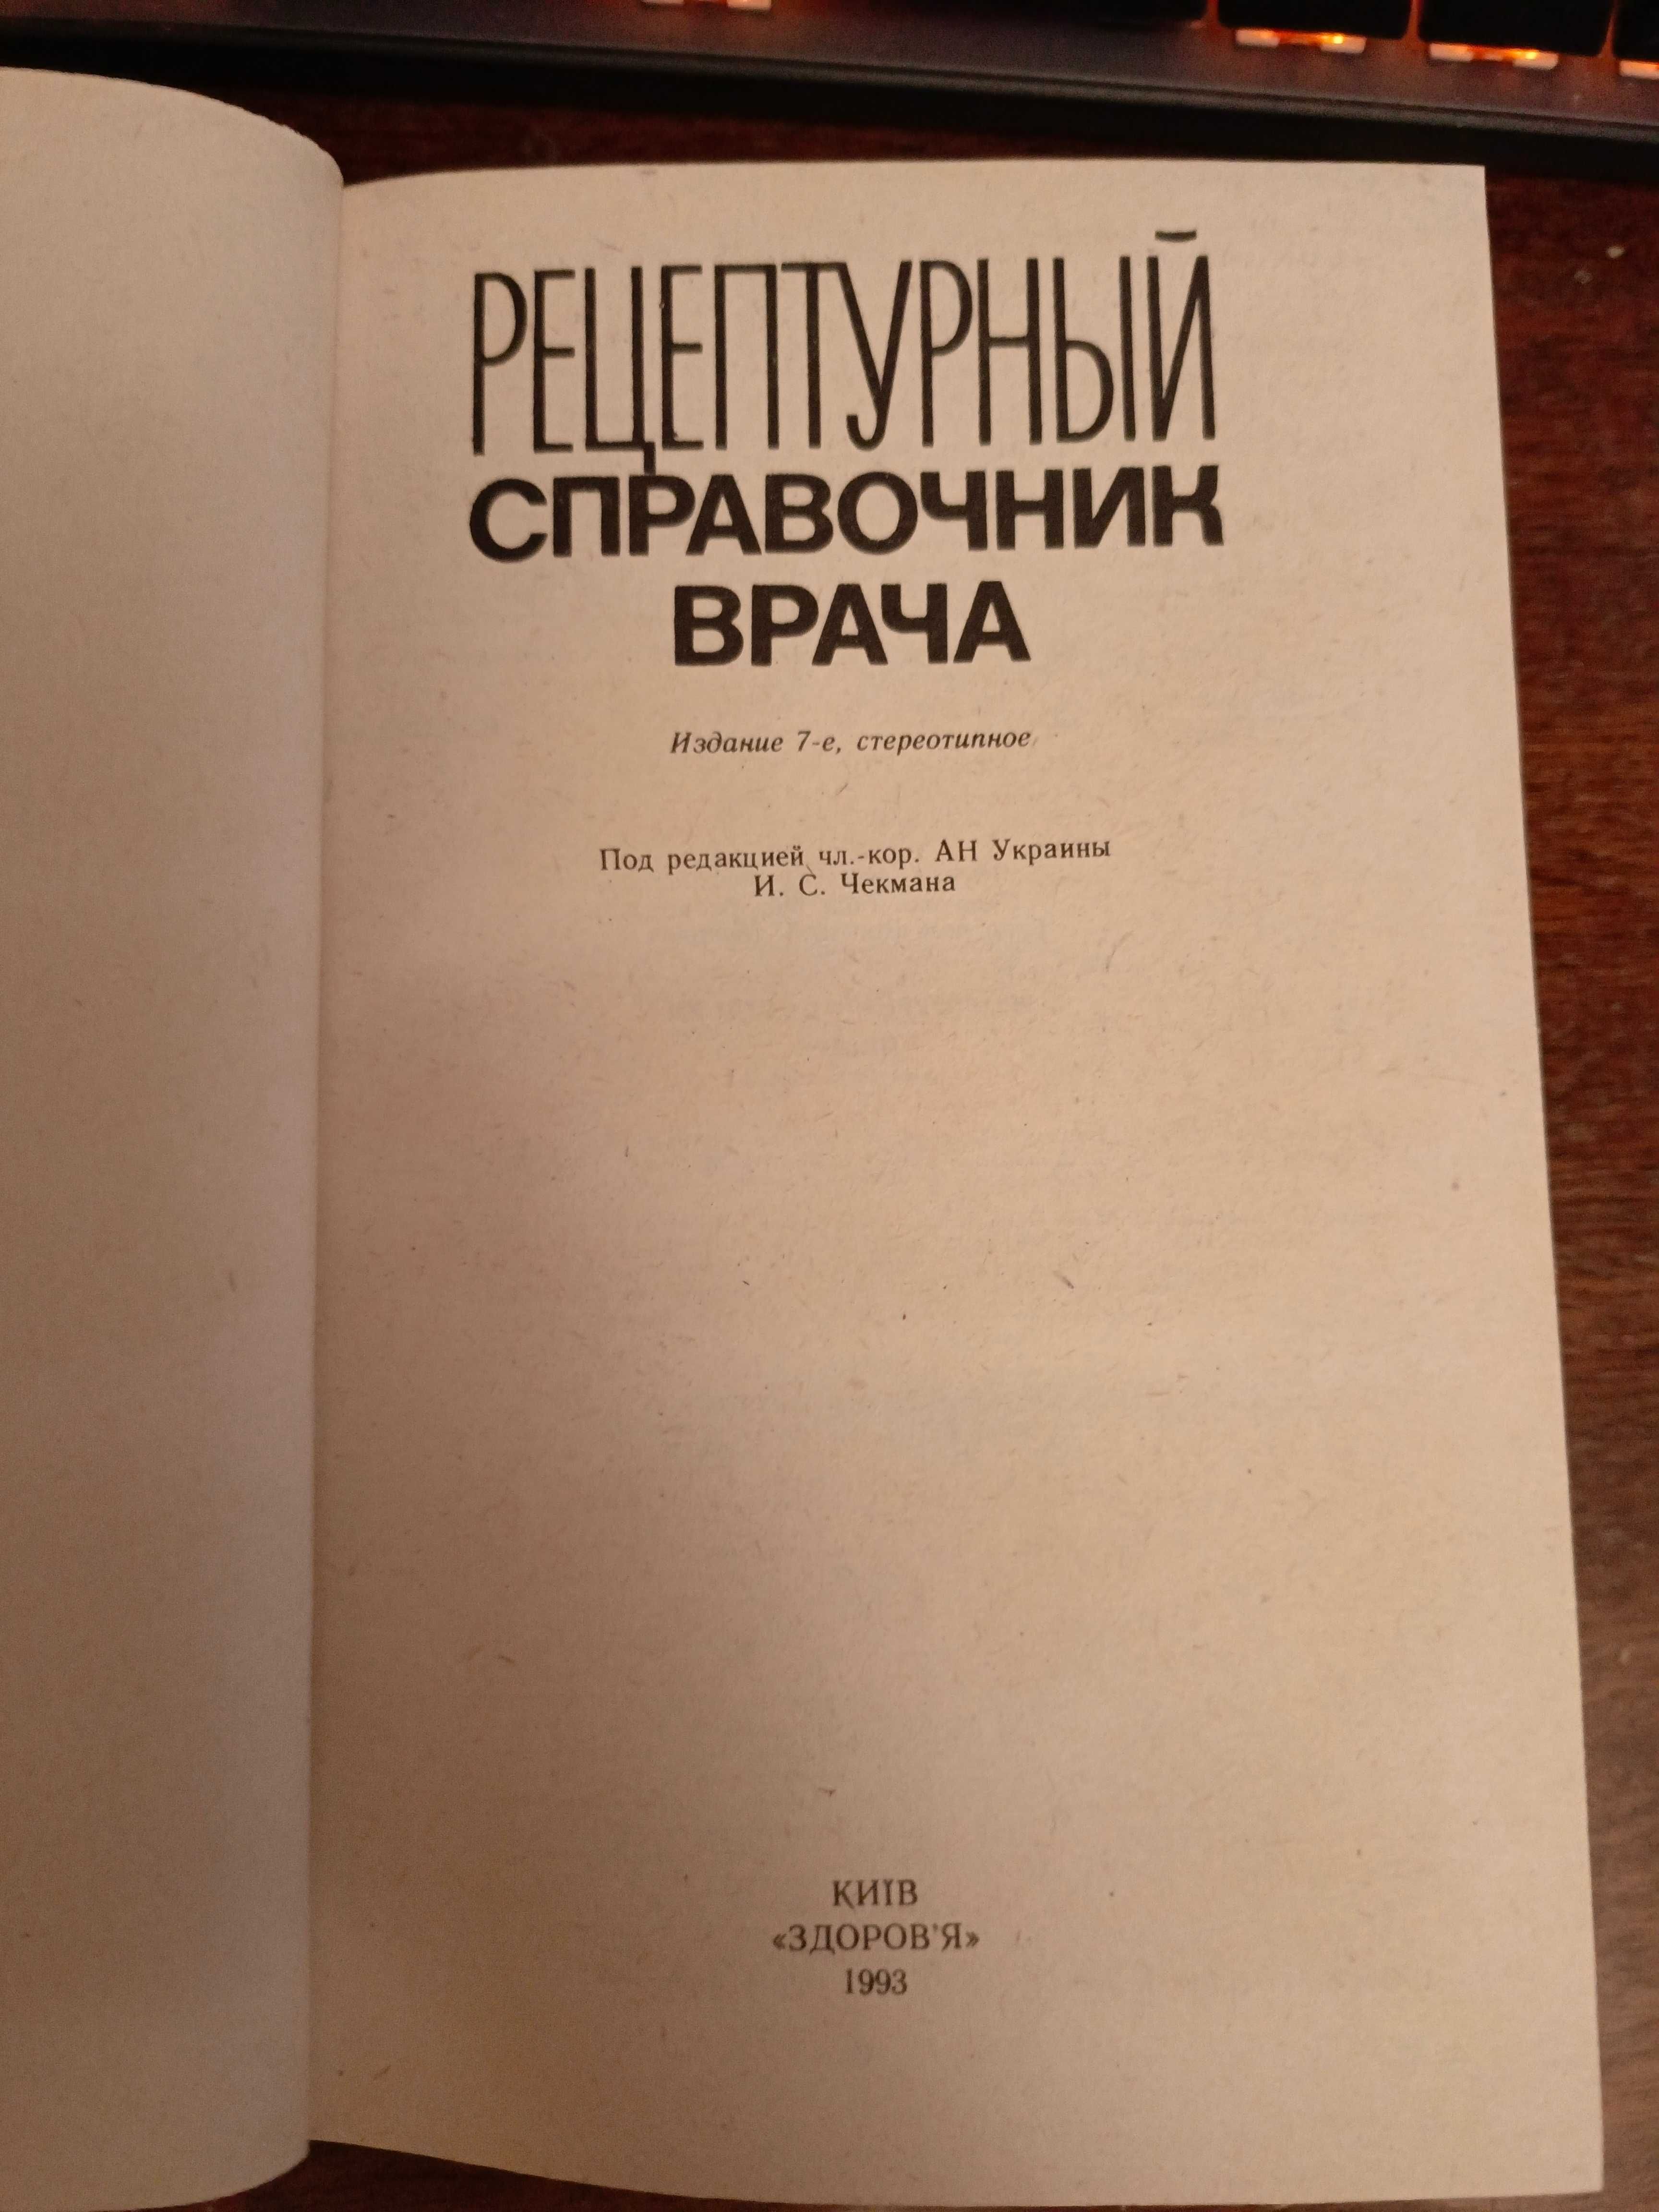 Рецептурный справочник врача, здоров'я, 1993.